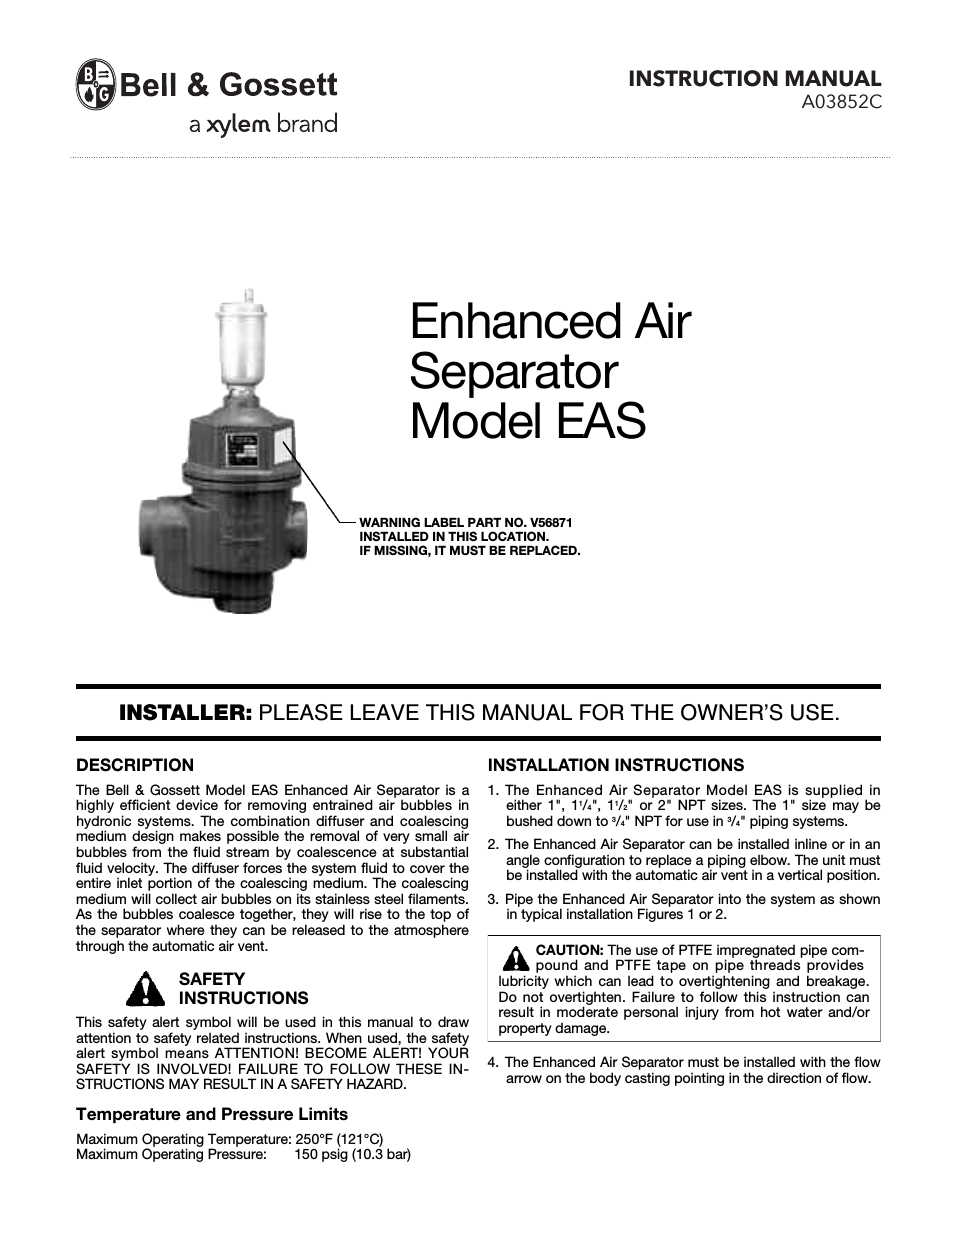 A03852C Enhanced Air Separator EAS